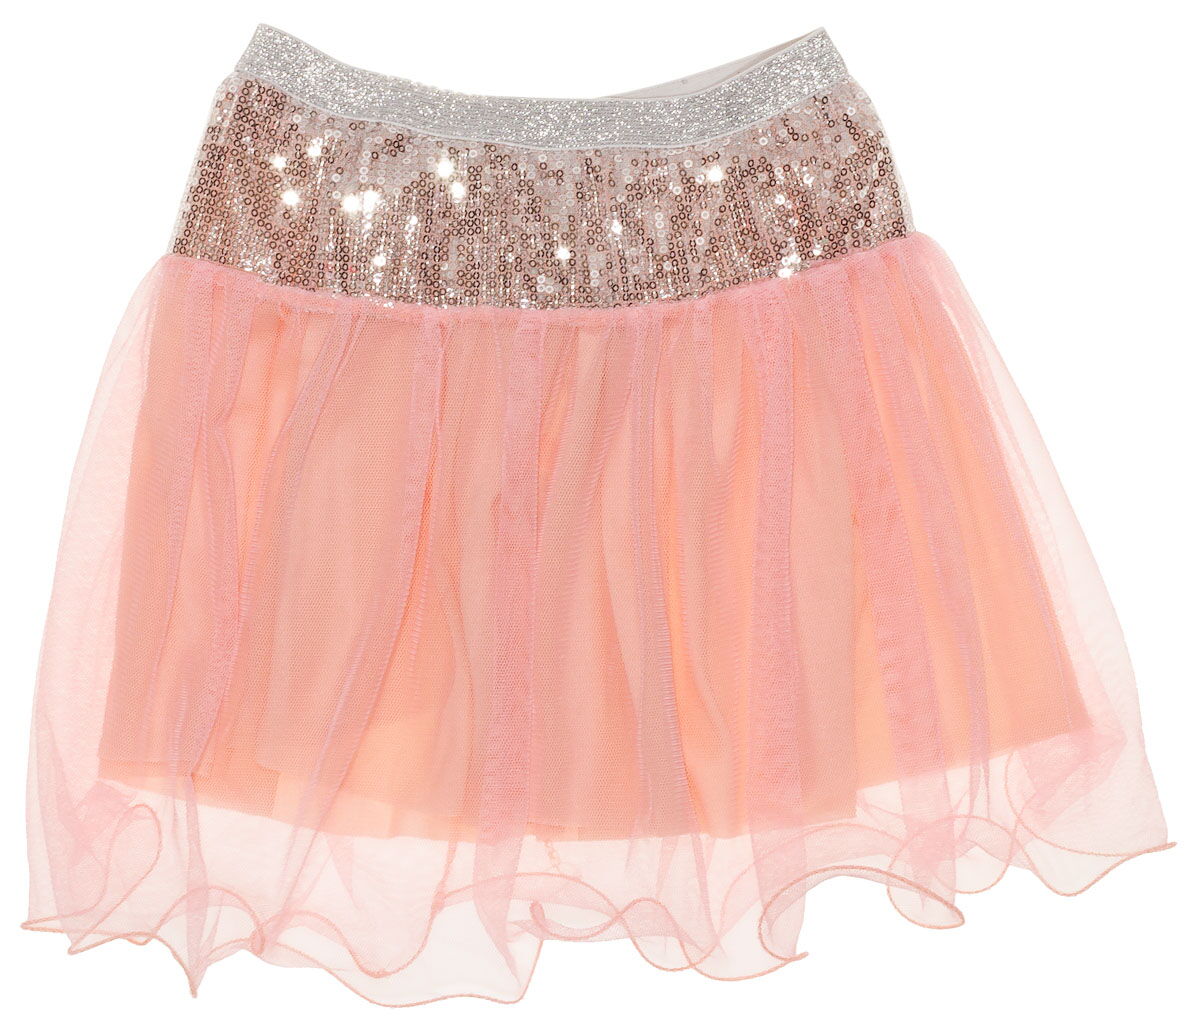 Нарядная юбка для девочки Пайетки розовая 128 - цена